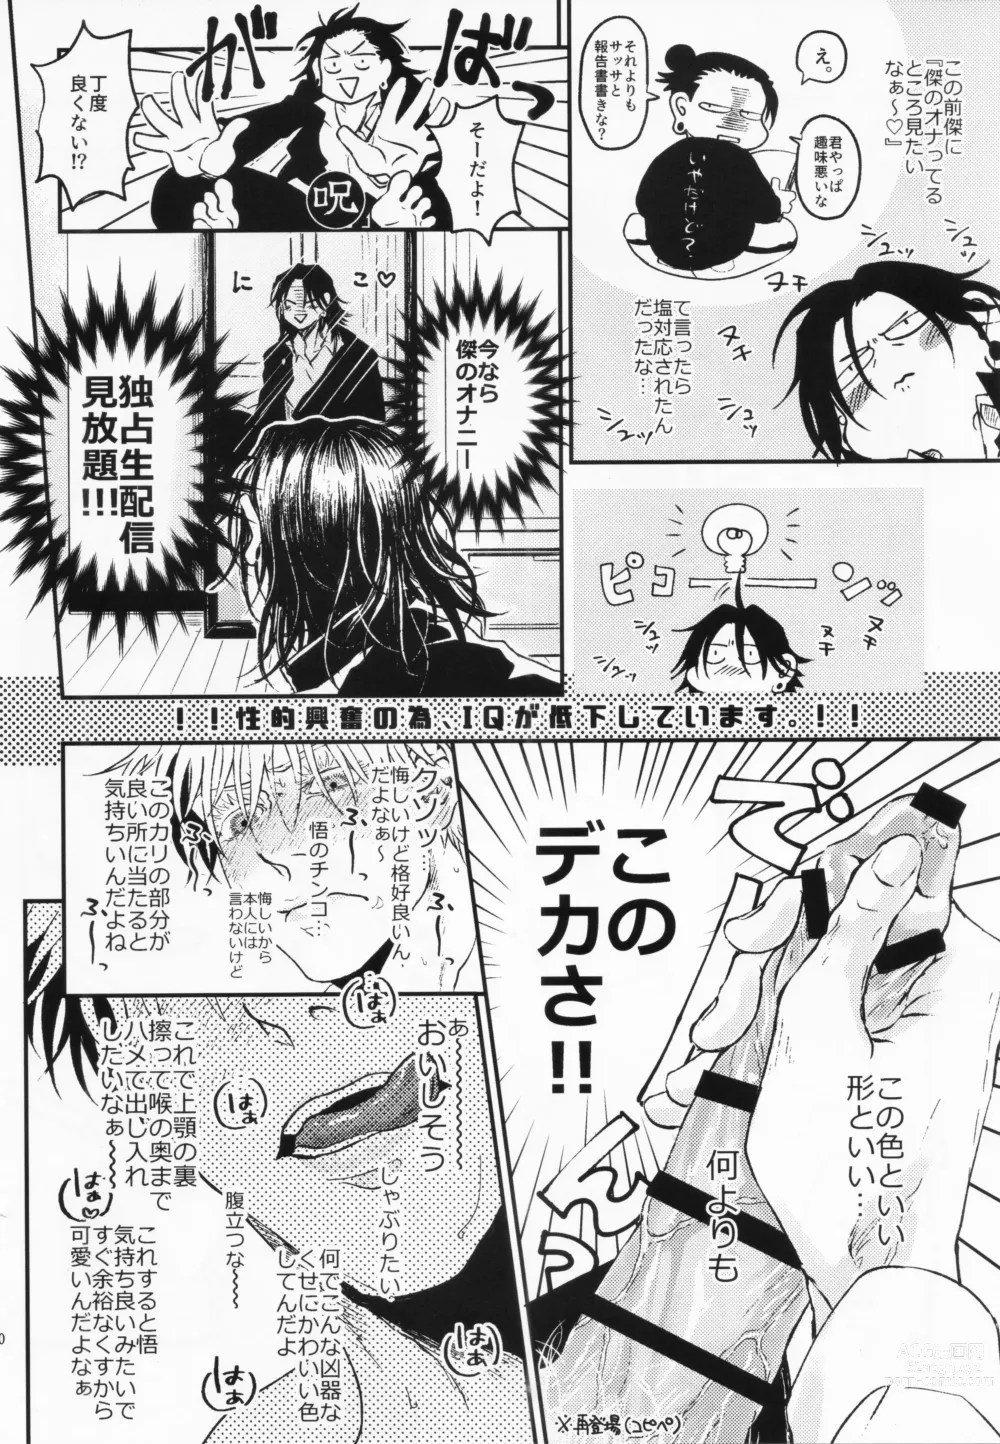 Page 18 of doujinshi Surussho.